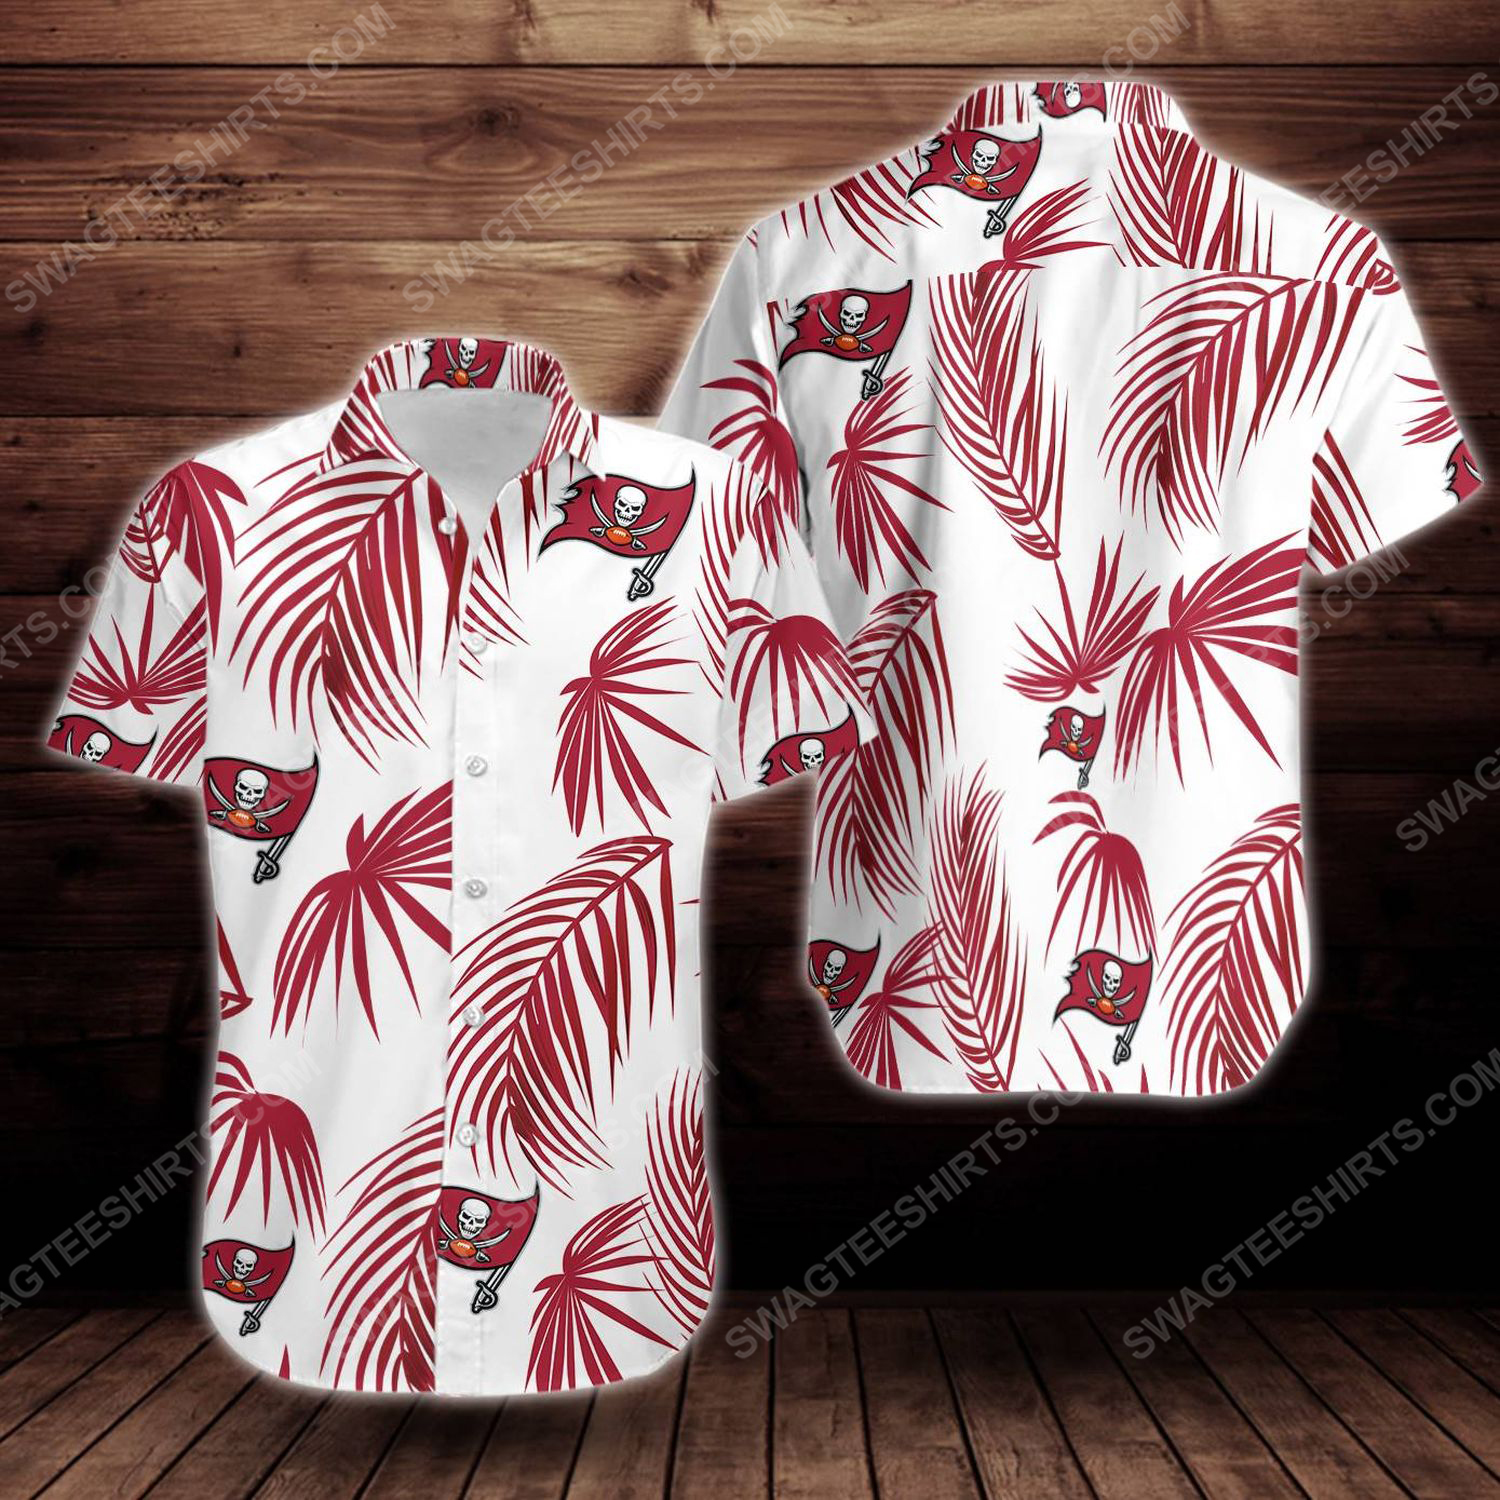 Tropical summer tampa bay buccaneers short sleeve hawaiian shirt 1